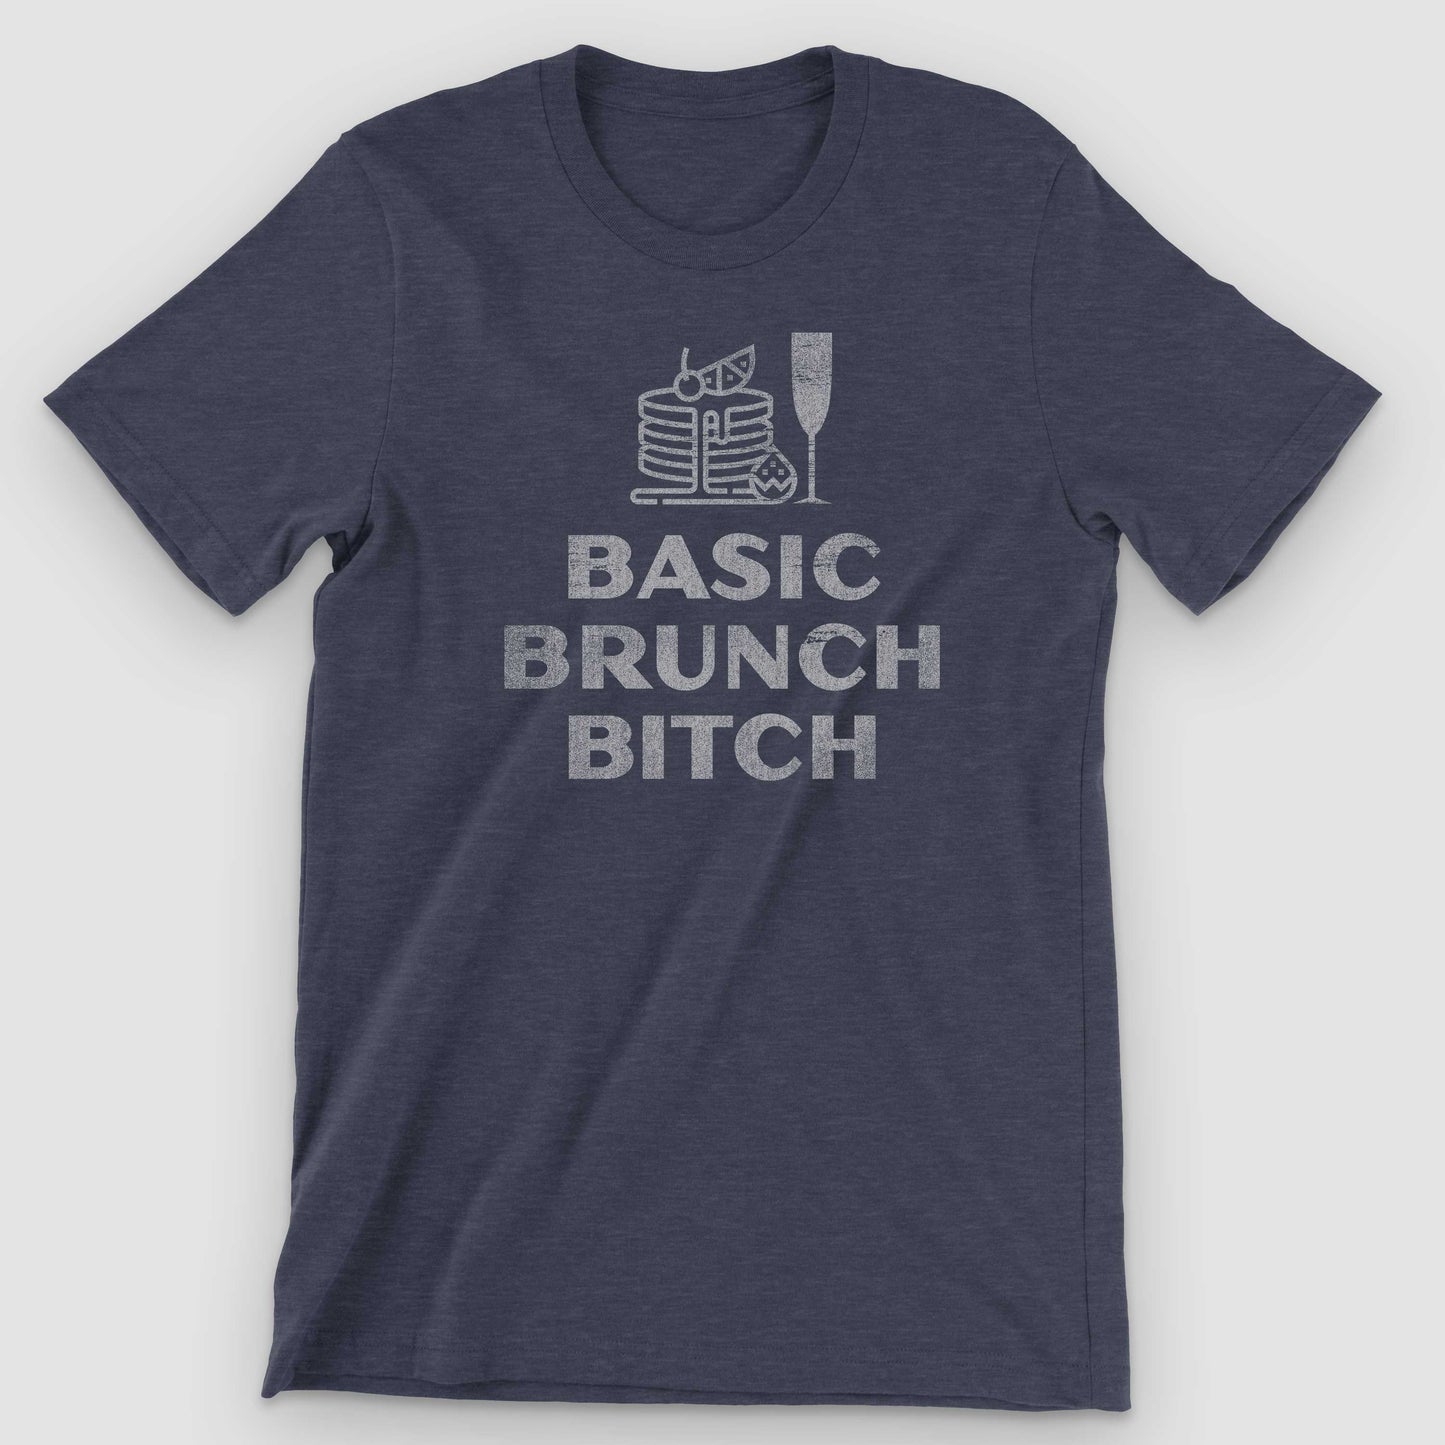 Heather Midnight Navy Basic Brunch Bitch Graphic T-Shirt by Snaxtime